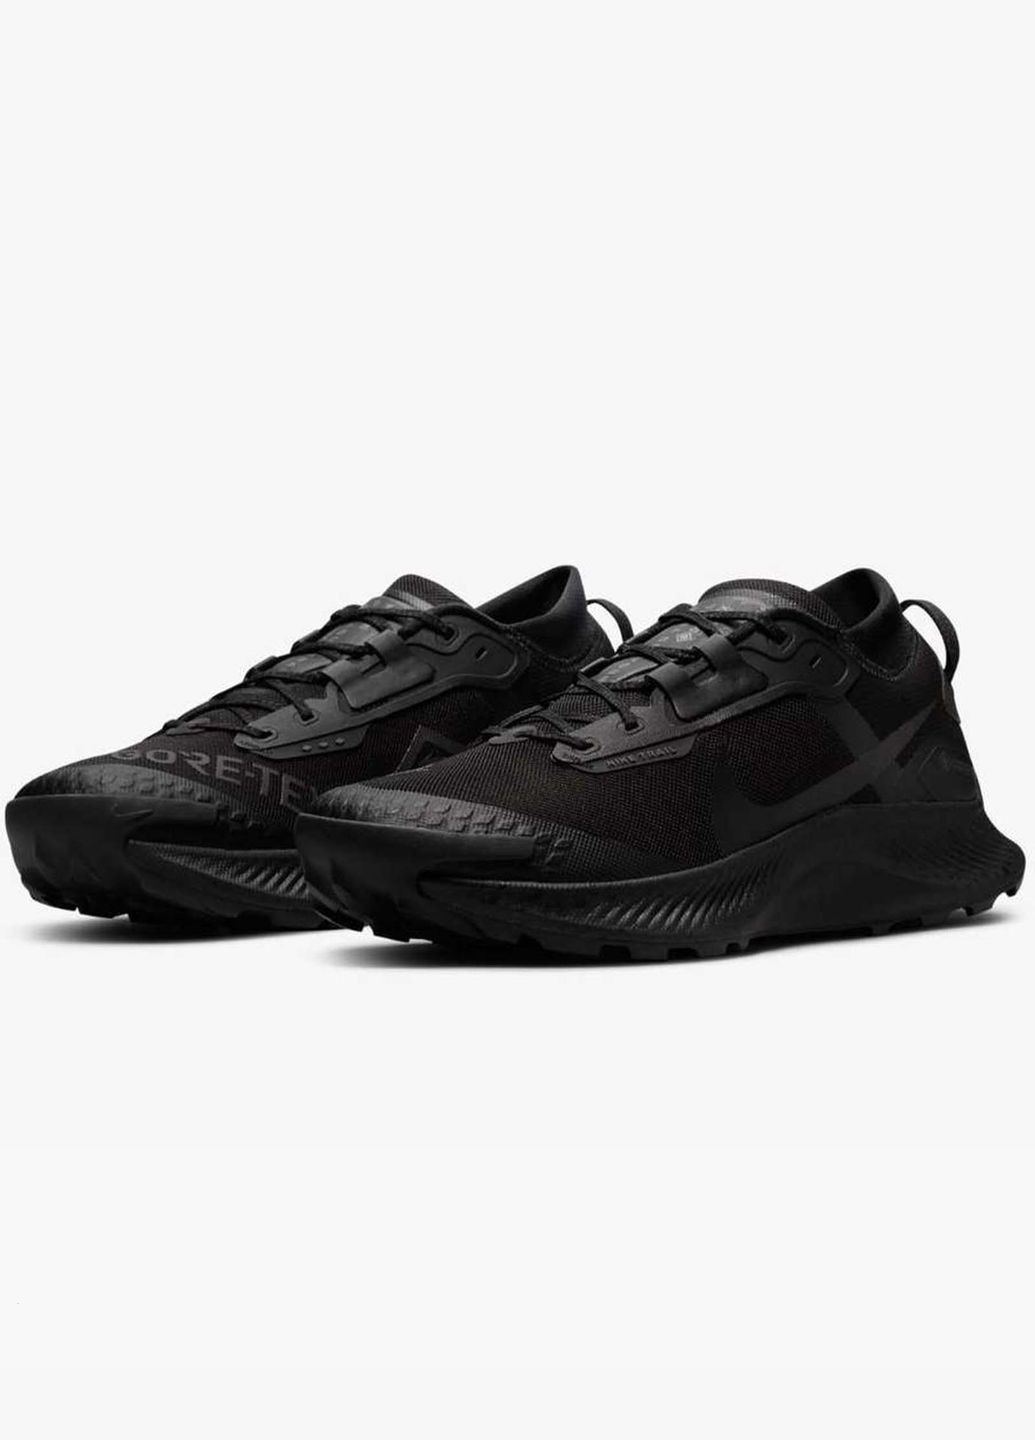 Черные всесезонные мужские кроссовки pegasus trail 3 gtx dc8793-001 весна-осень текстиль синтетика мембрана черные Nike